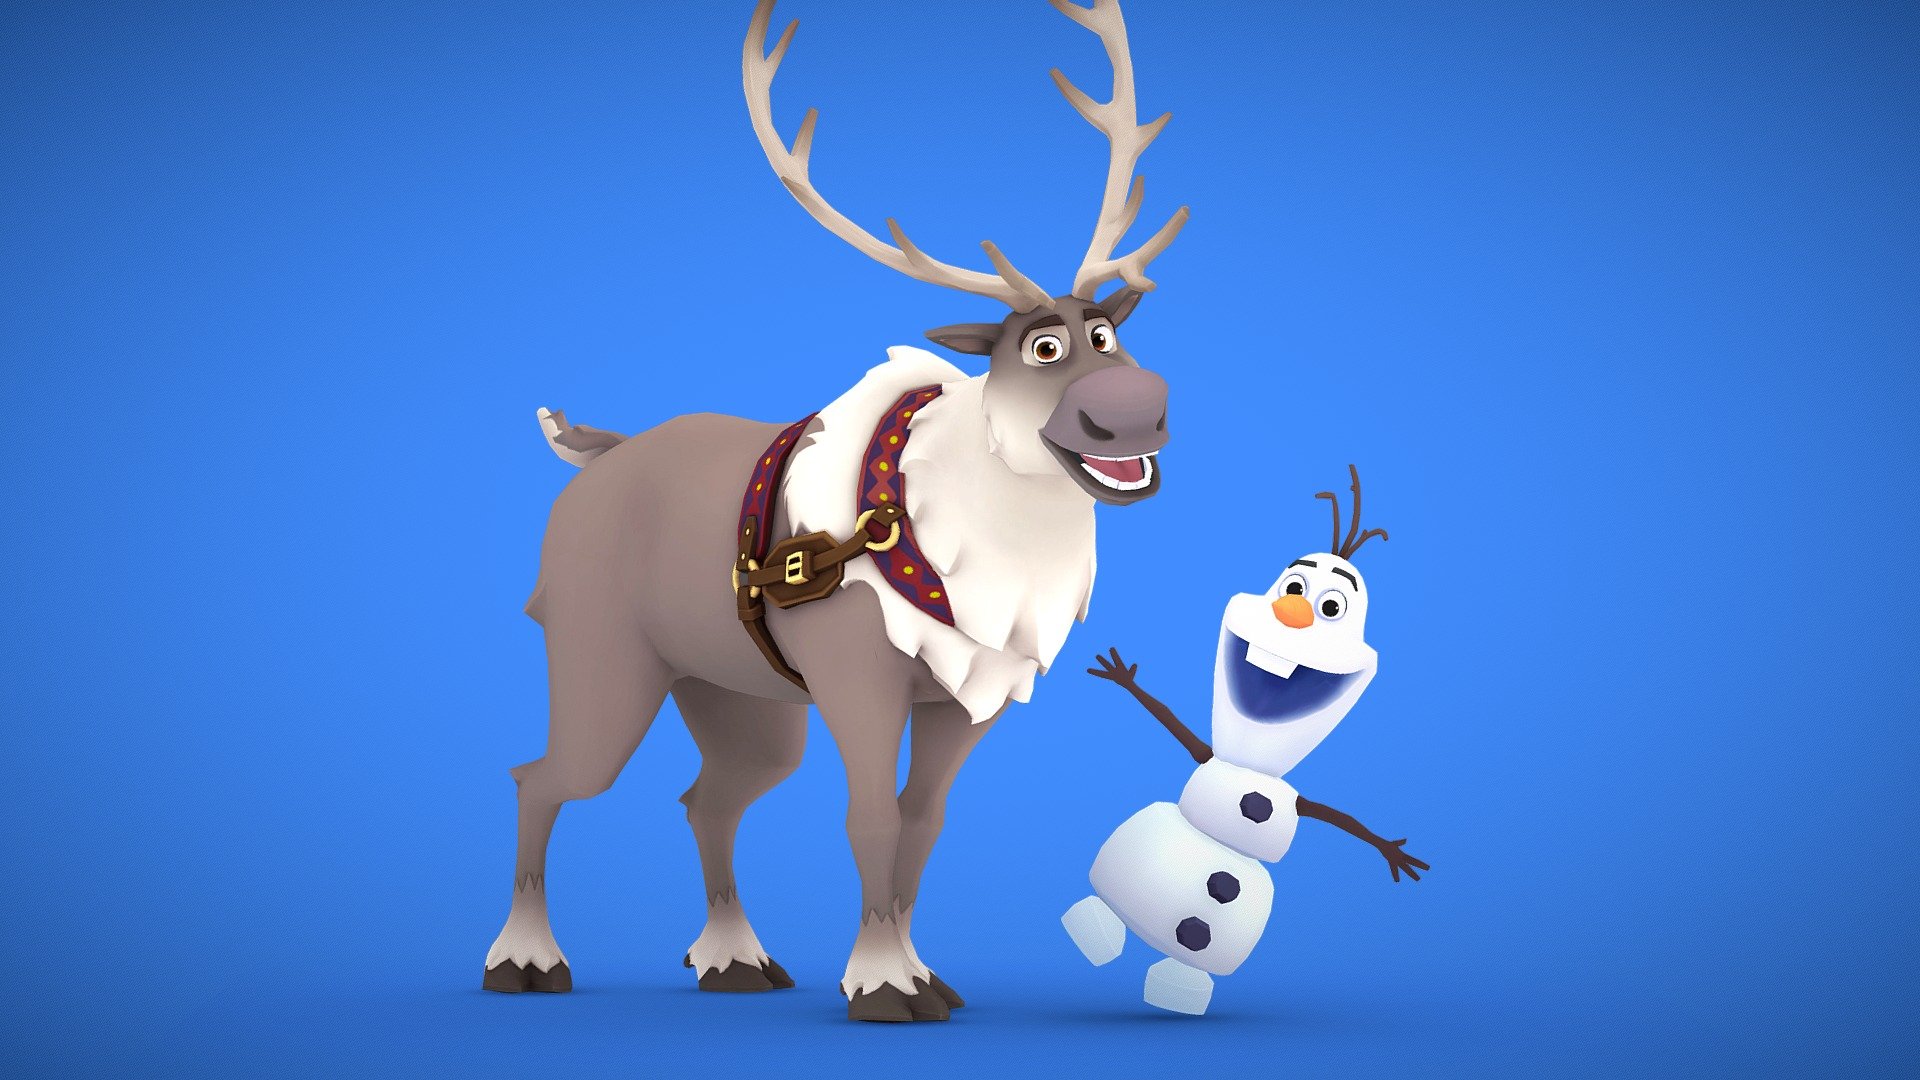 Frozen - Olaf vs. Sven (Funny Scene) 